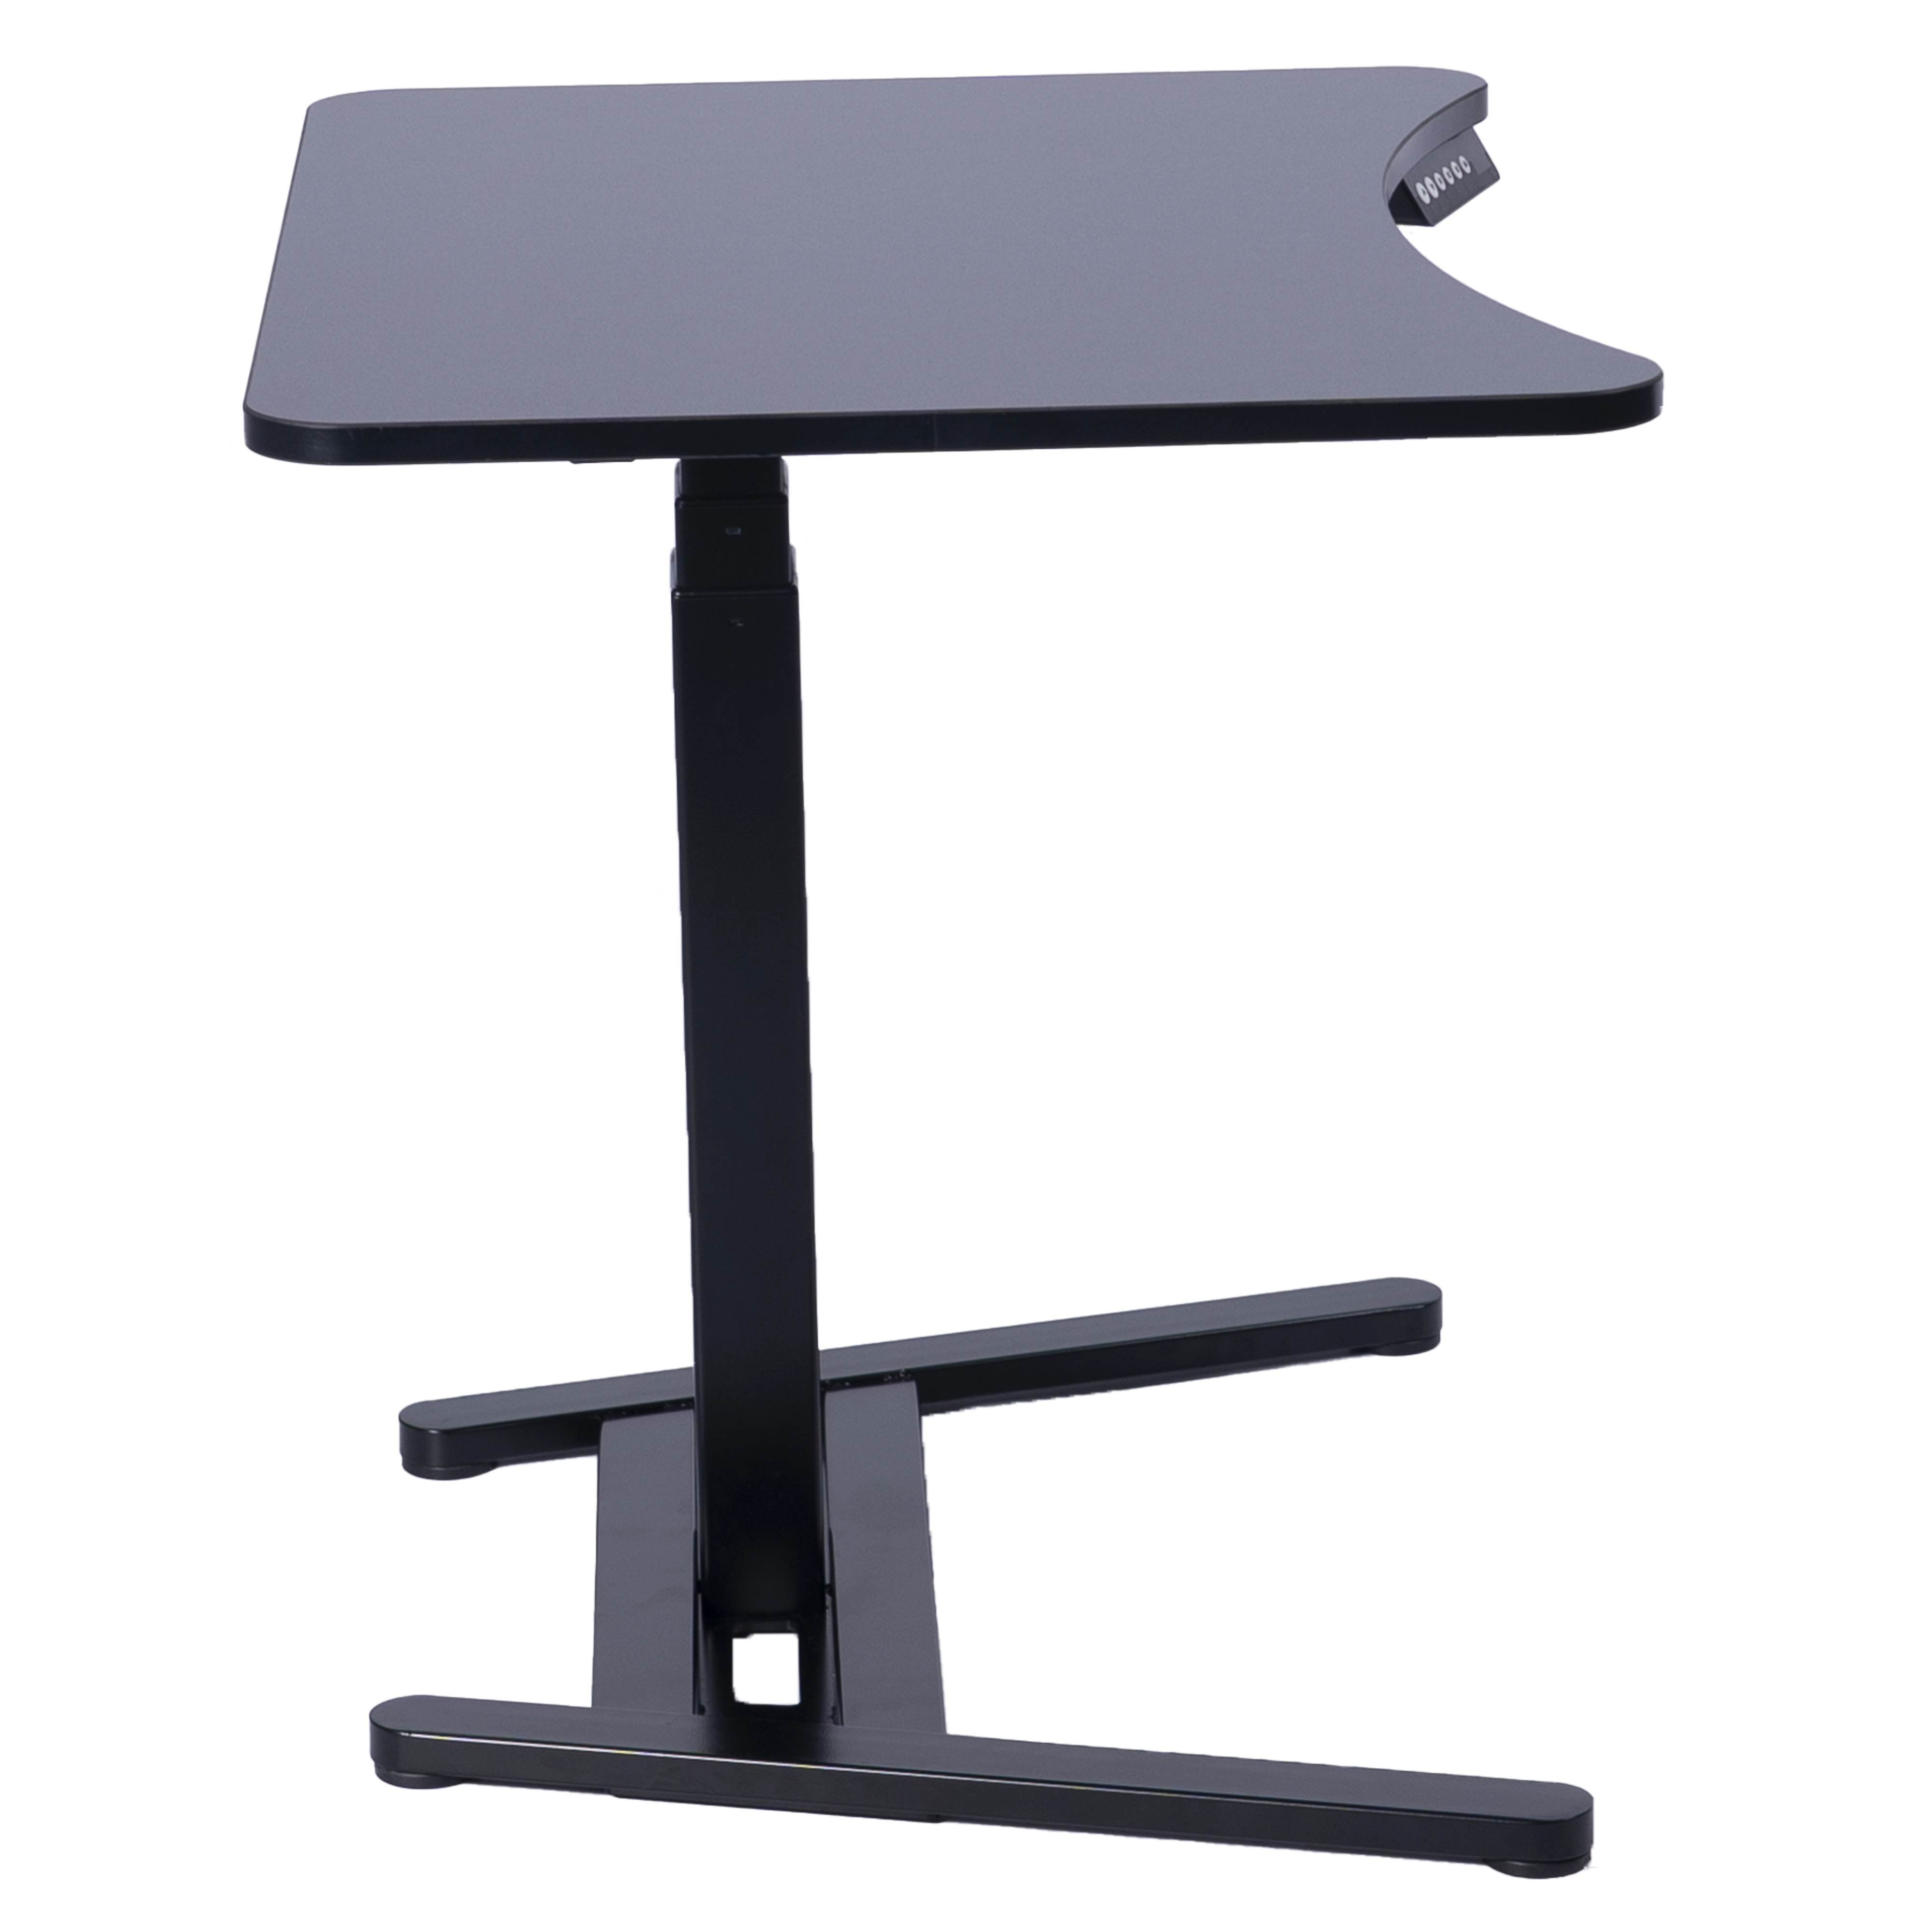  E-TABLE ONE hochverstellbarer Schreibtisch